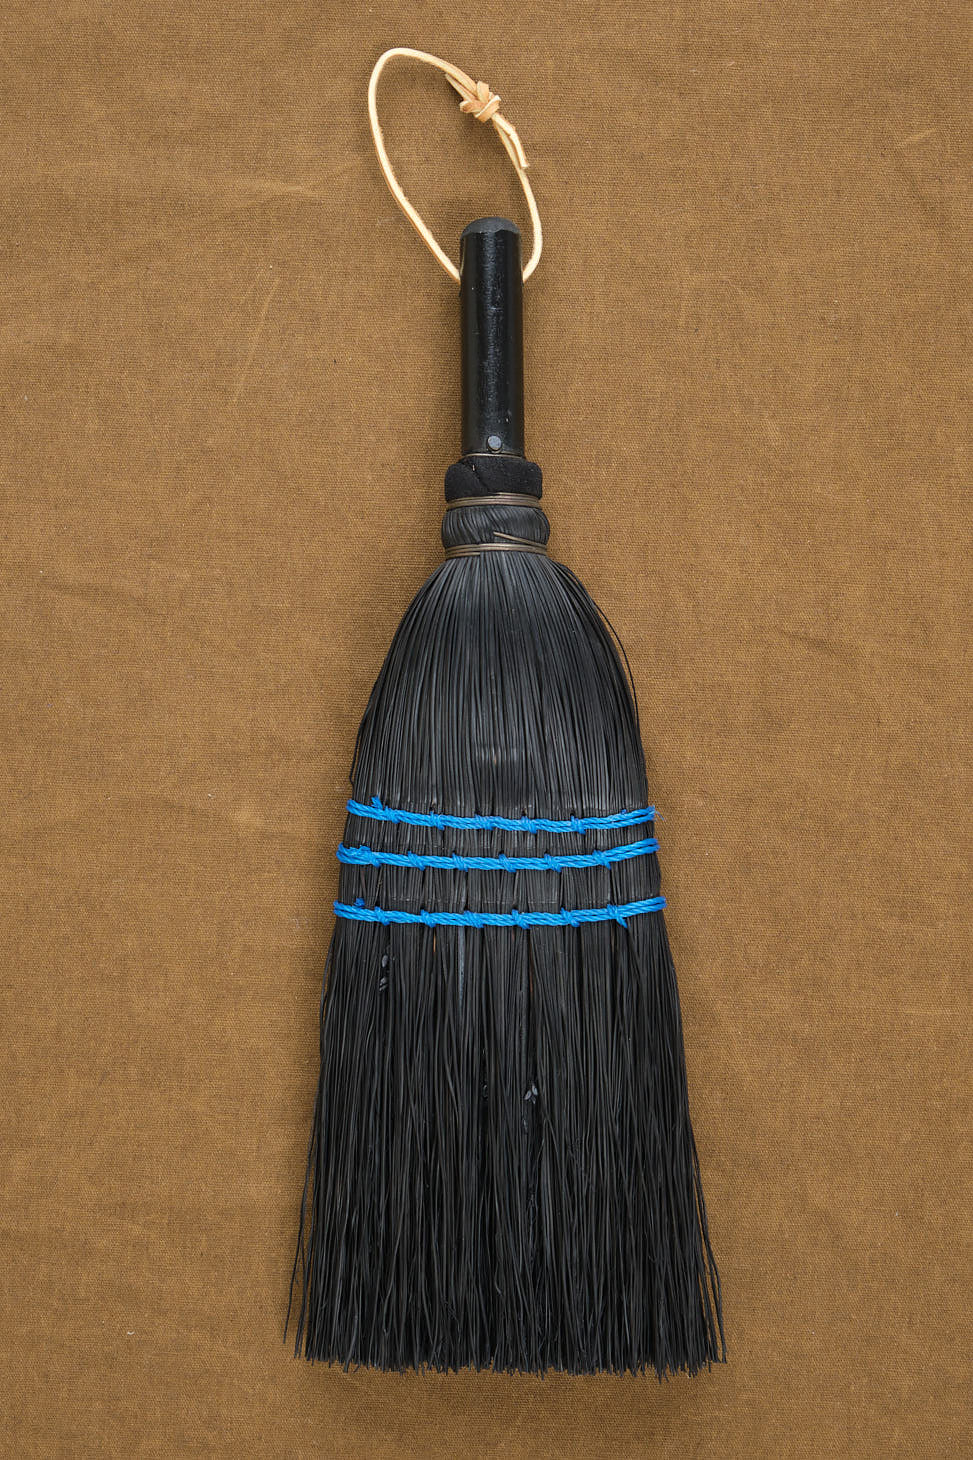 Whisk Broom in black